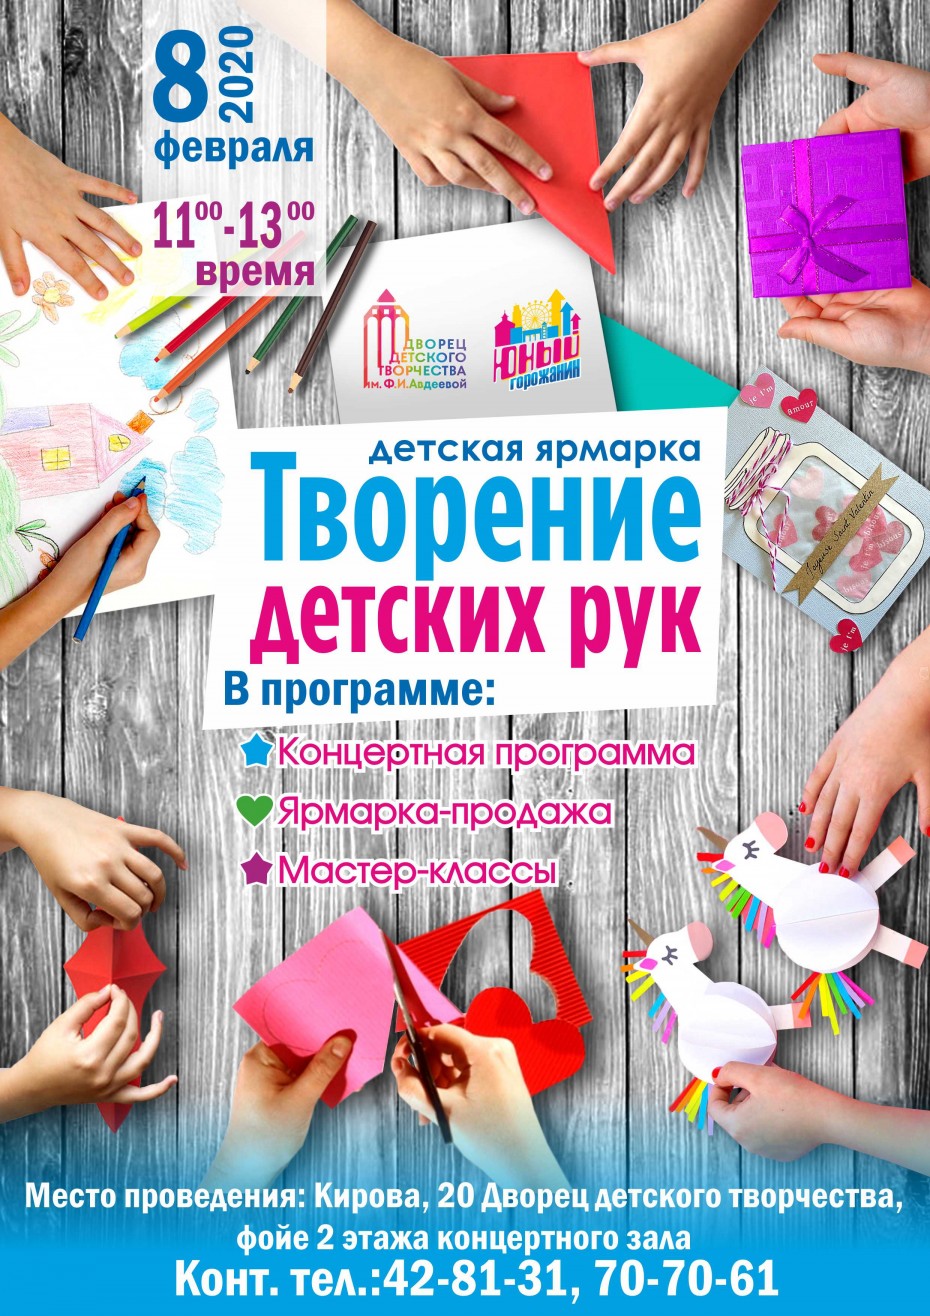 В Якутске пройдет ярмарка "Творение детских рук"